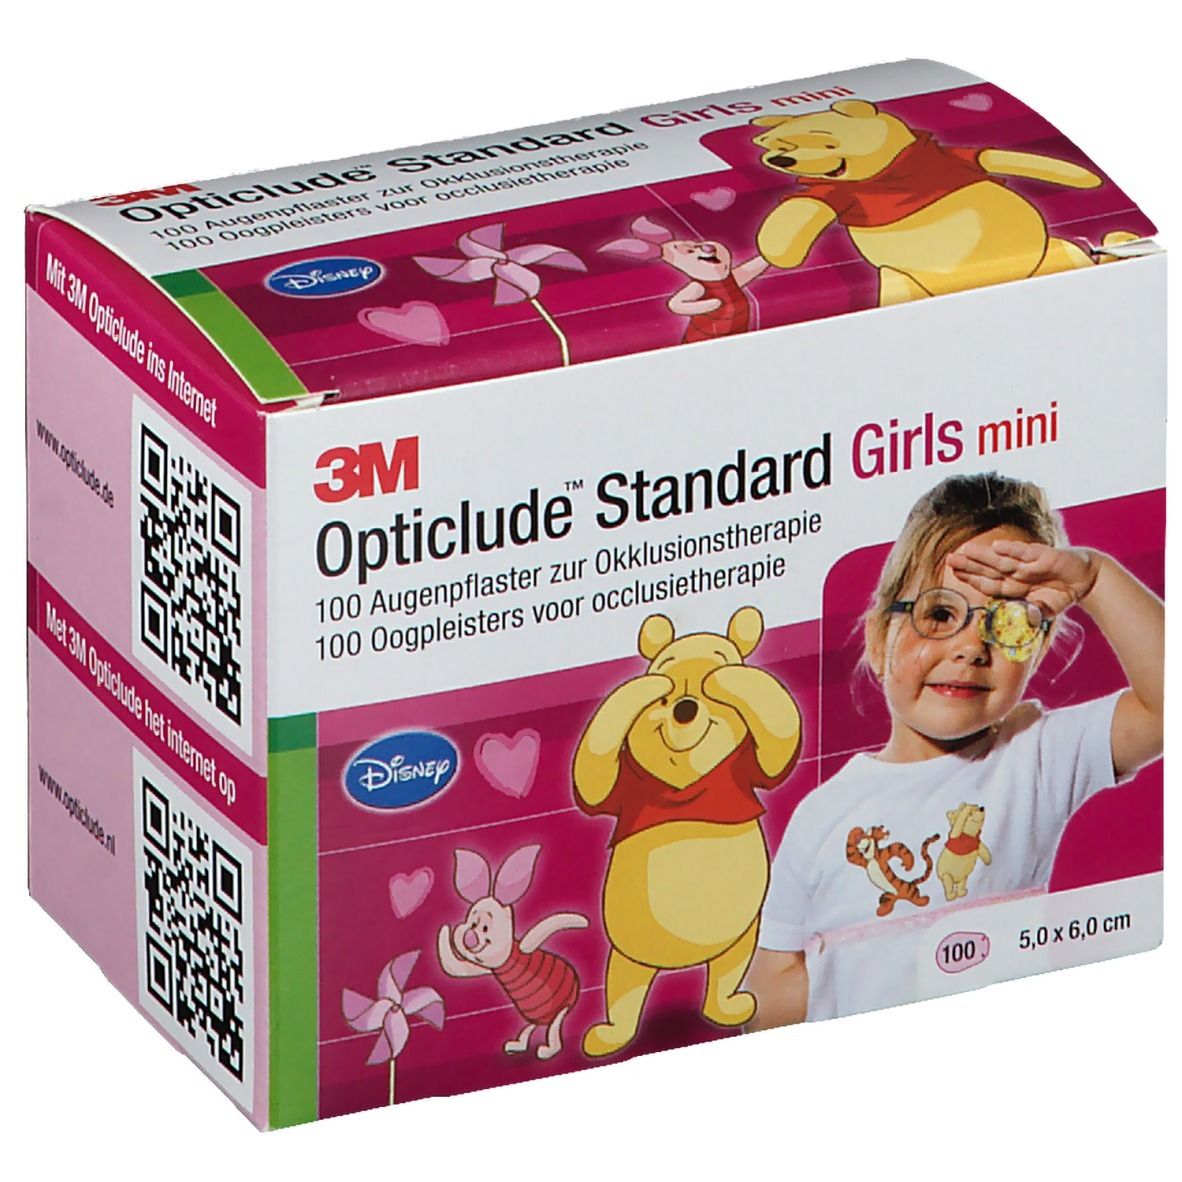 3M Opticlude Augenpflaster Disney Winnie Pooh Mini